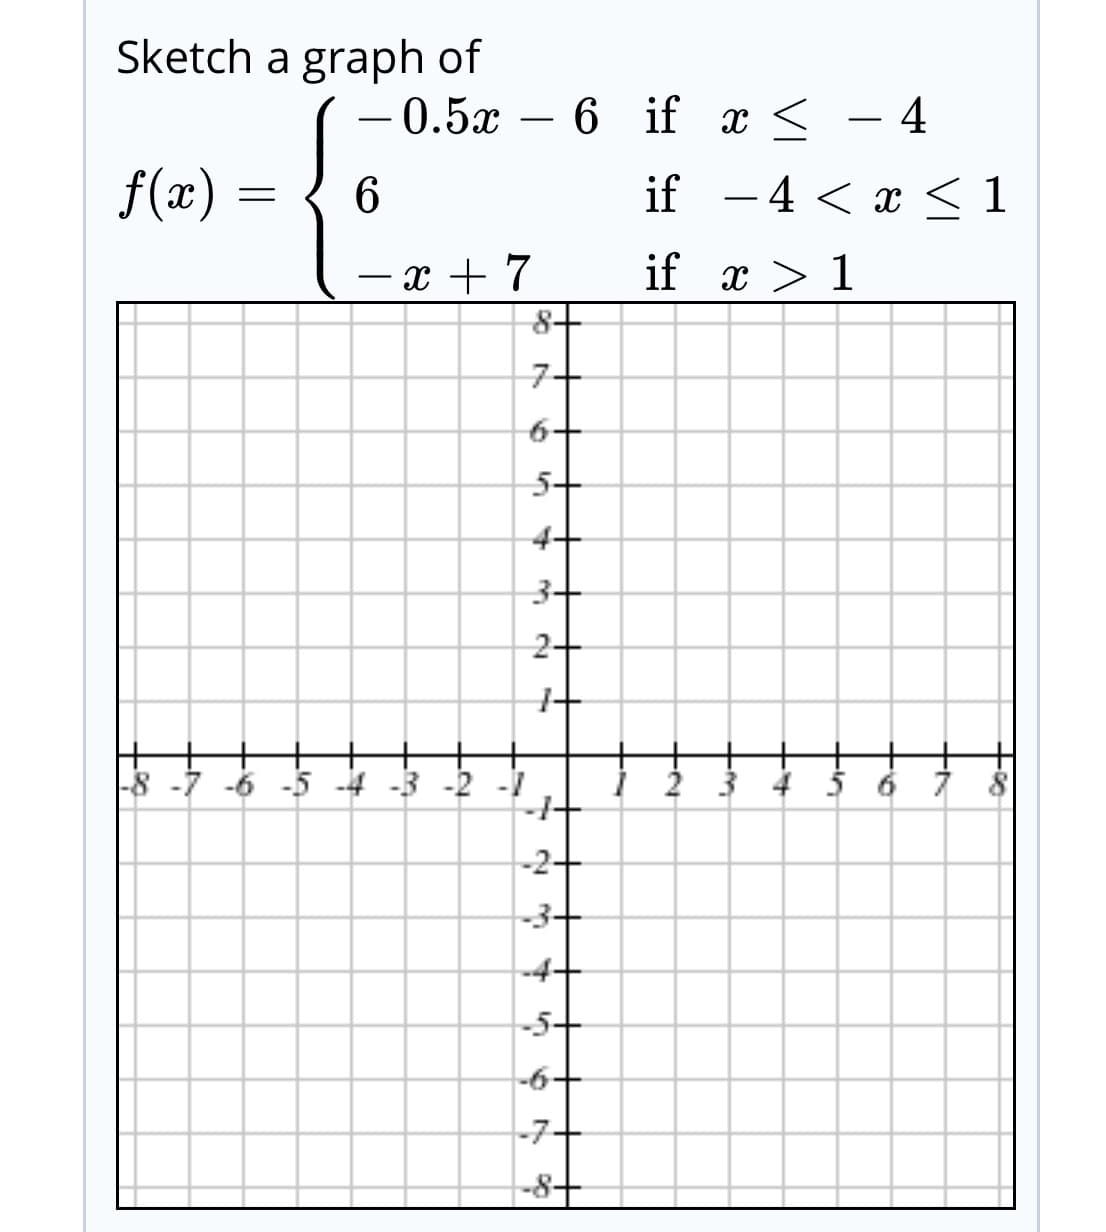 Sketch a graph of
0.5x – 6 if x <
f(x)
if -4 < x < 1
if x > 1
-x + 7
8+
|-8 -7 -6 -5 -4 -3 -2 -1
-1+
-2+
-3+
-4+
-5+
-6+
-7+
-8+
2.
